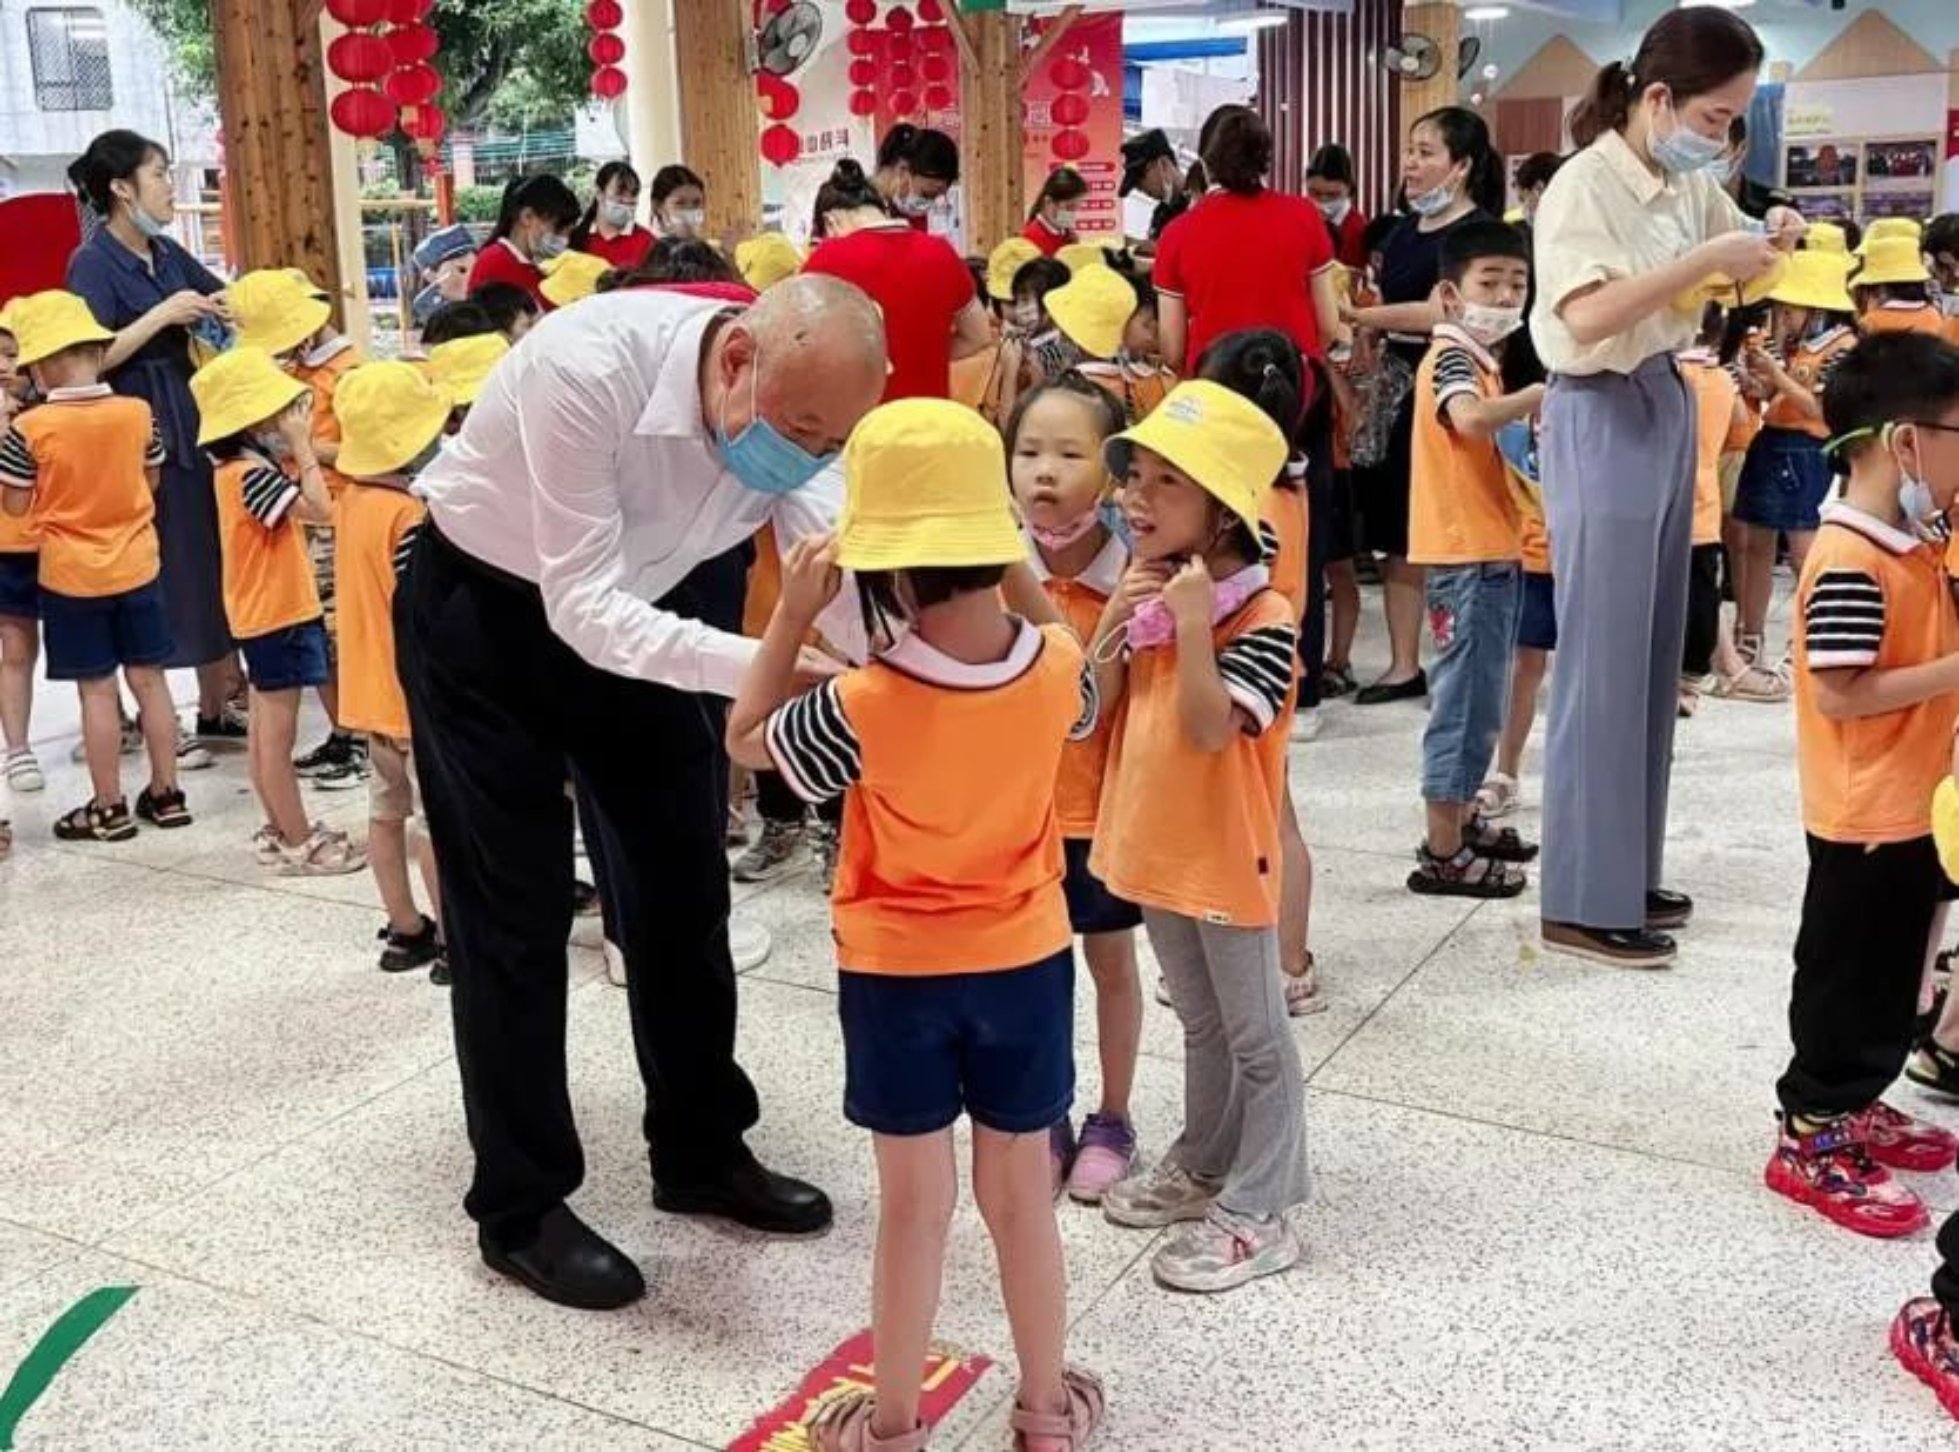 大手拉小手，共建助成长—— 广州南方学院到从化区温泉镇幼儿园开展慰问活动